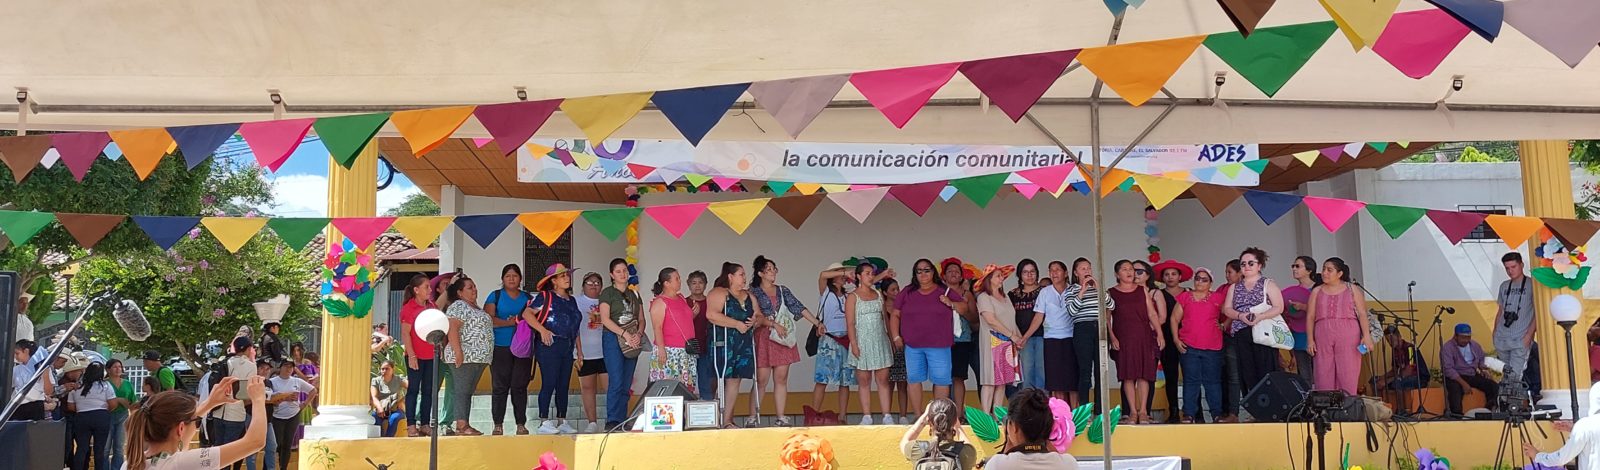 Production audiovisuelle “ADES 30 ans – En marche avec la communauté de Santa Marta vers un avenir meilleur” 4